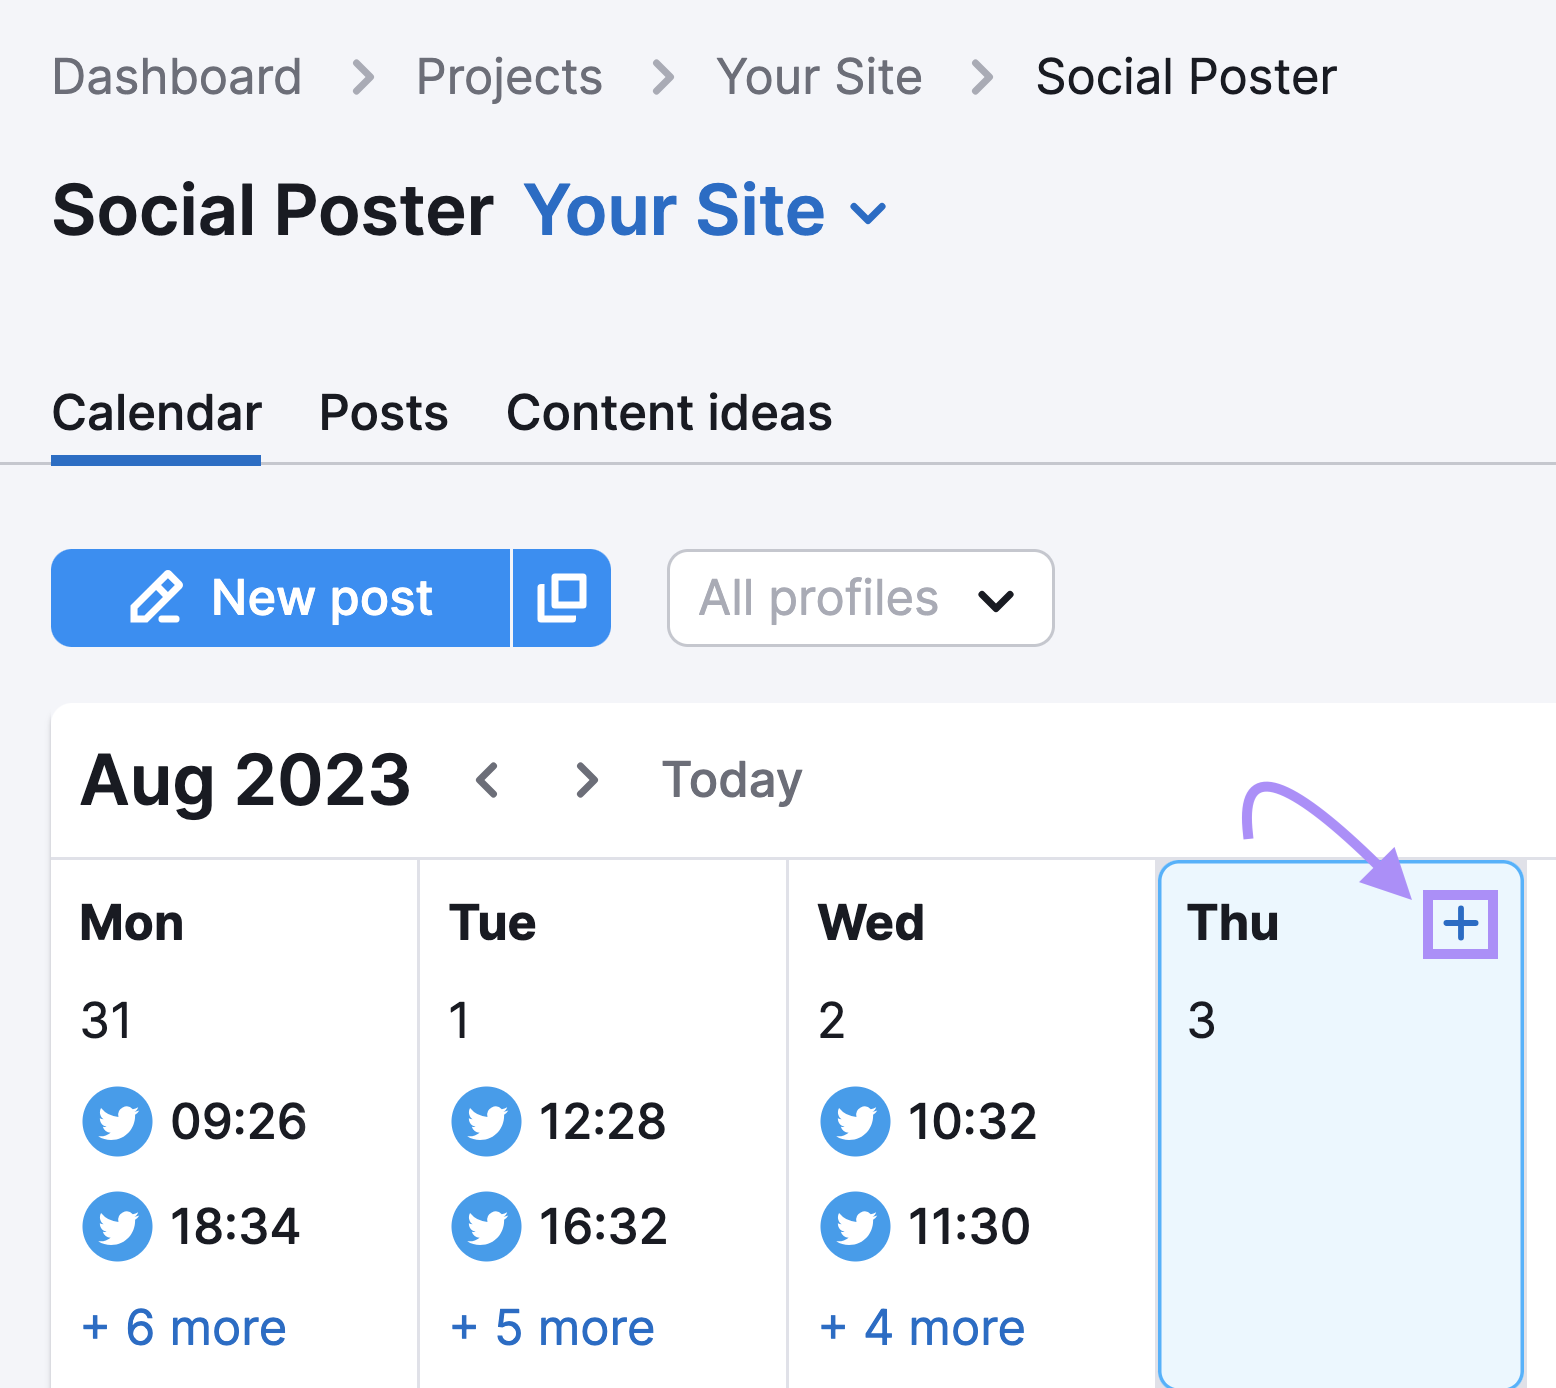 “Calendar” tab in Social Poster tool